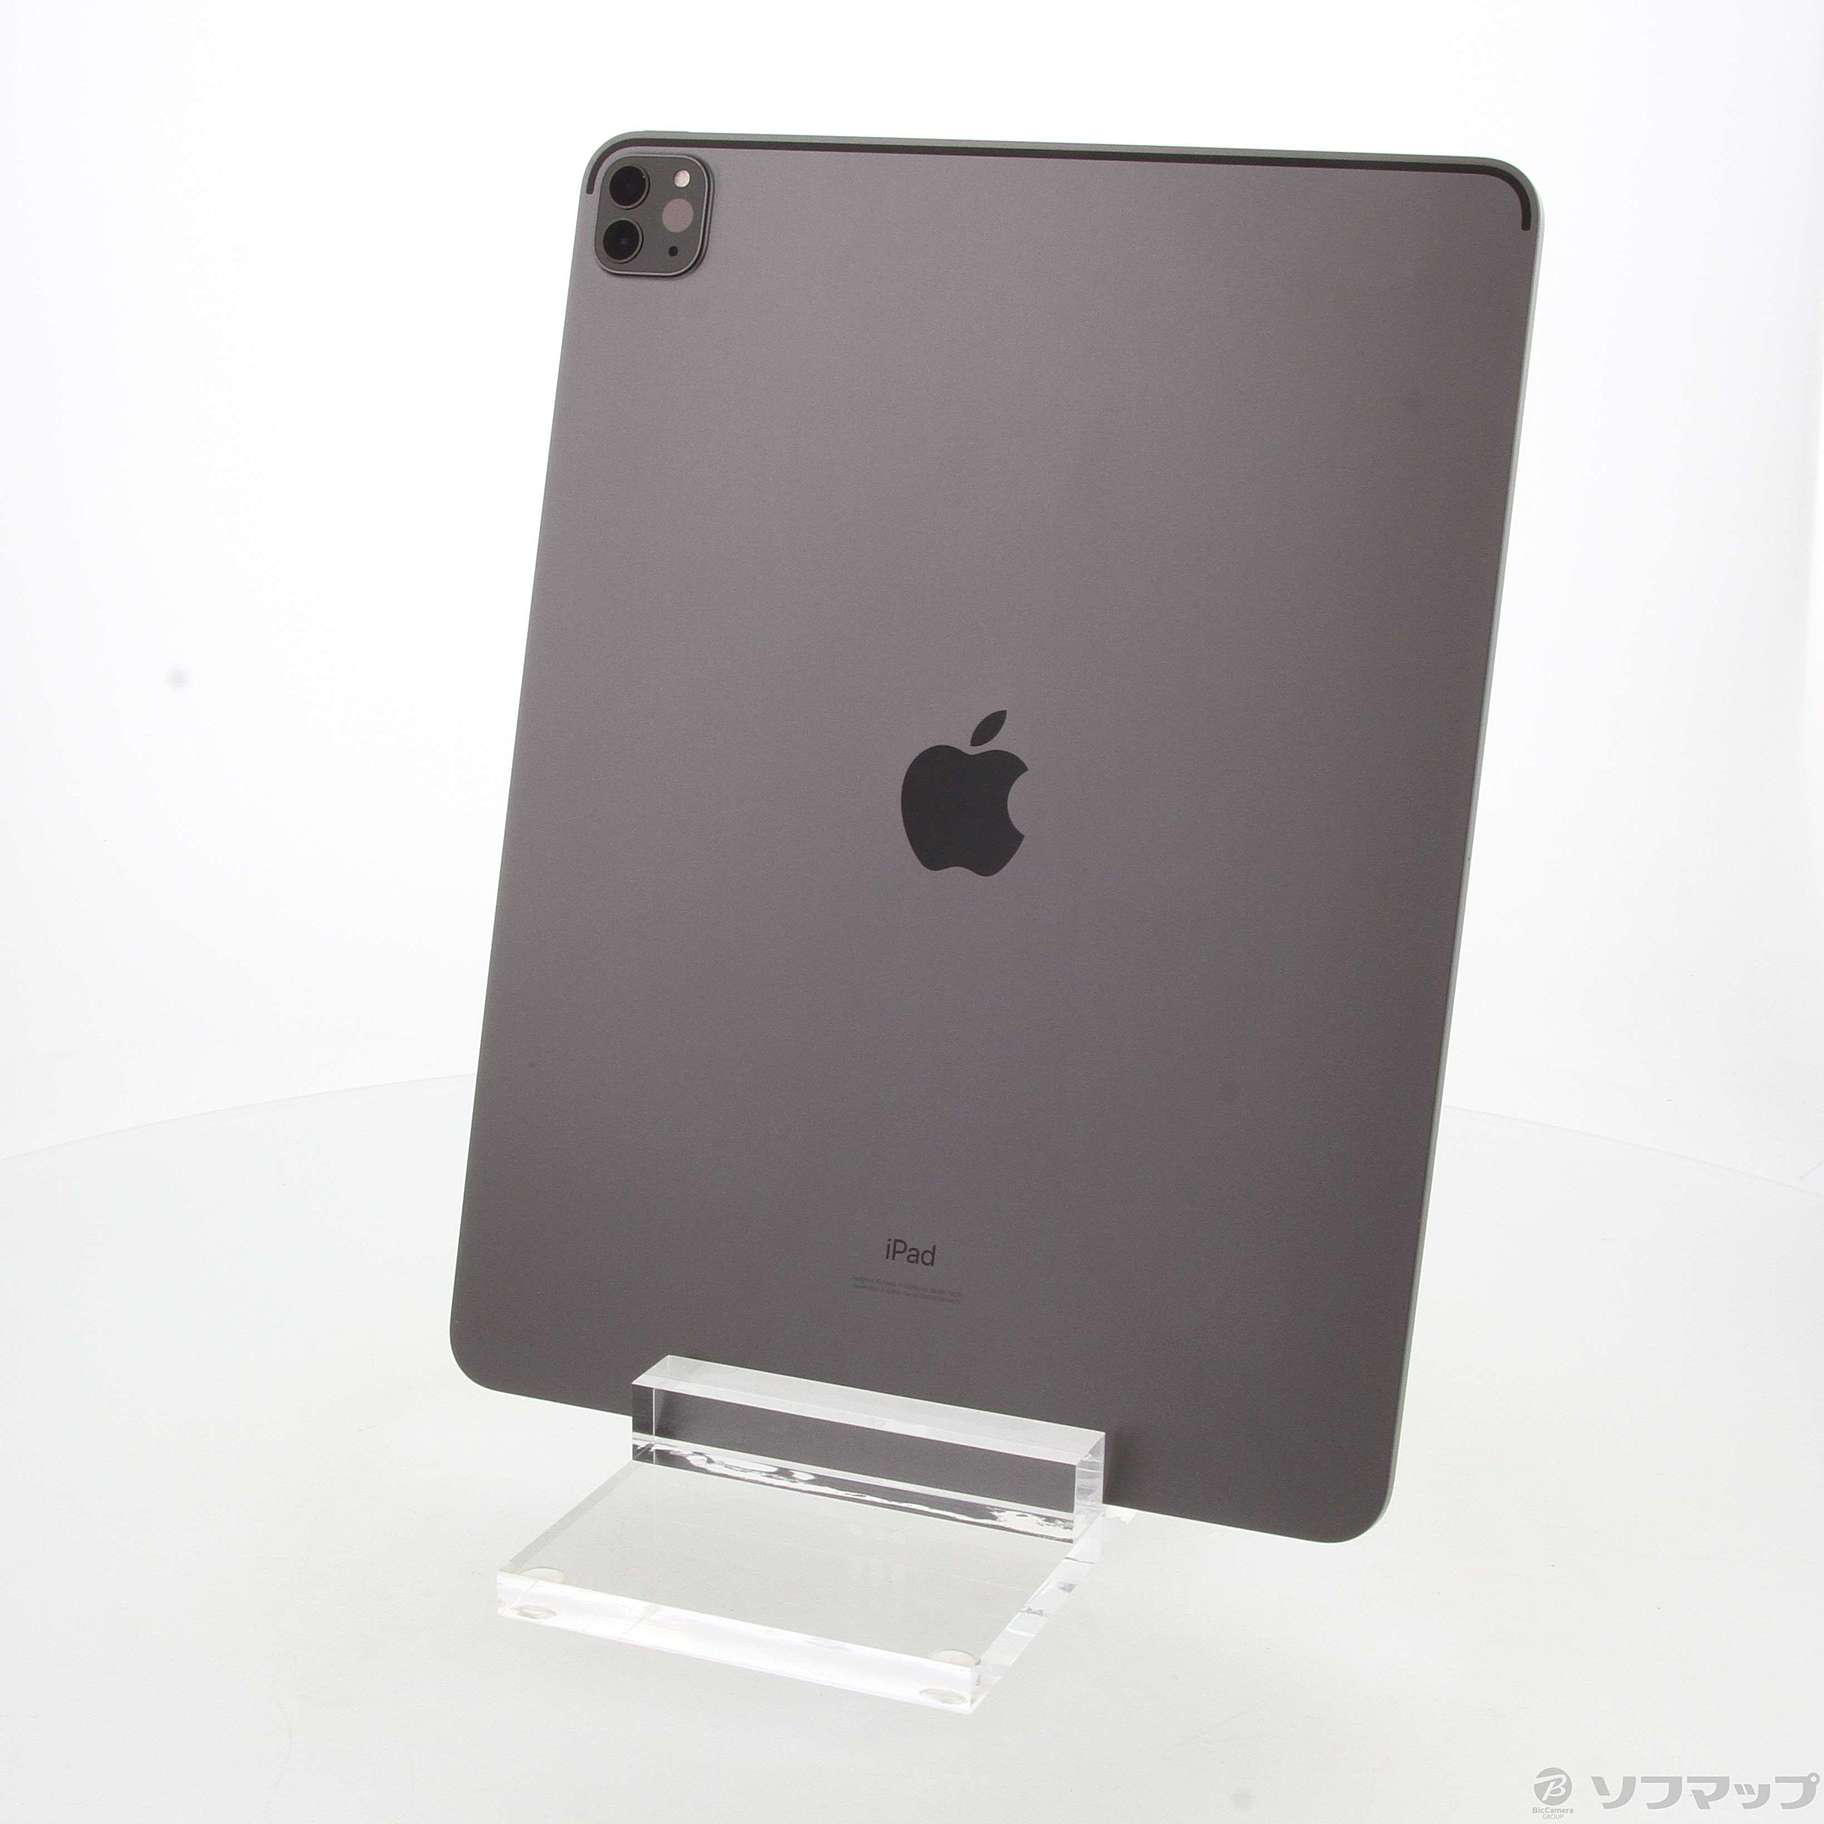 日本通販サイト iPad Pro スペースグレイ 1TB 12.9インチ (第4世代) タブレット